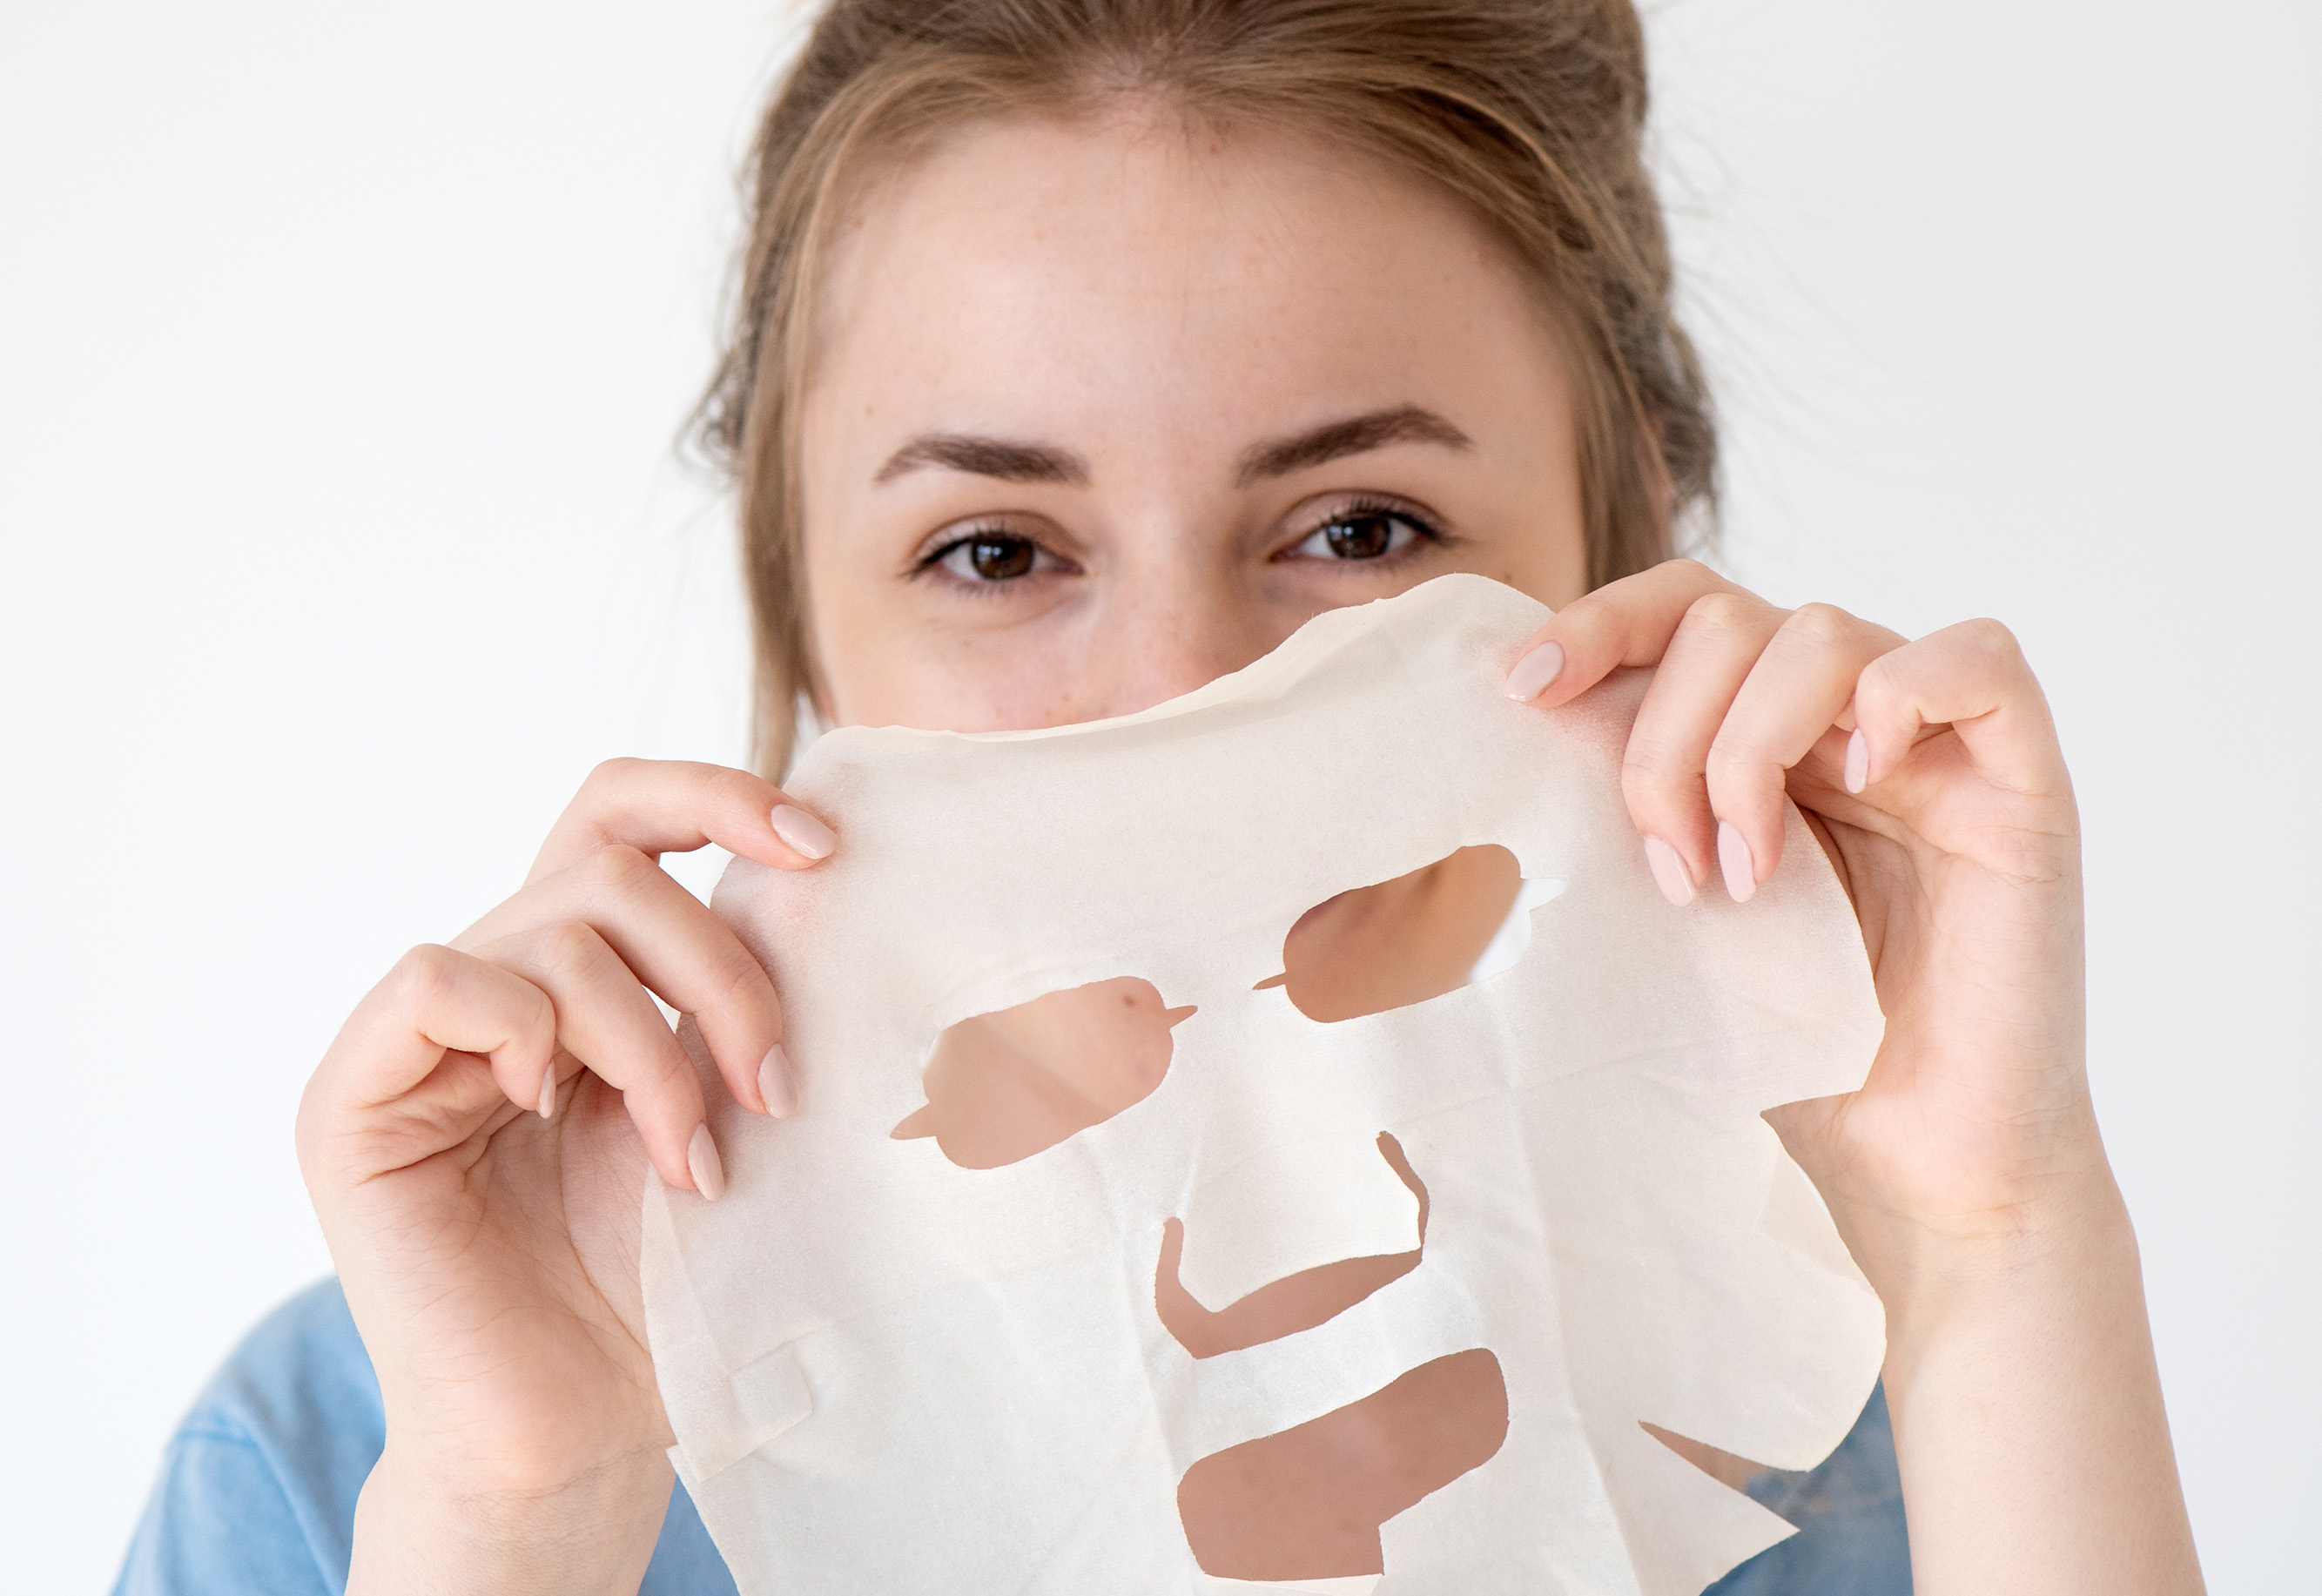 Maski - etap świadomiej pielęgnacji skóry, którego nie możesz pominąć 